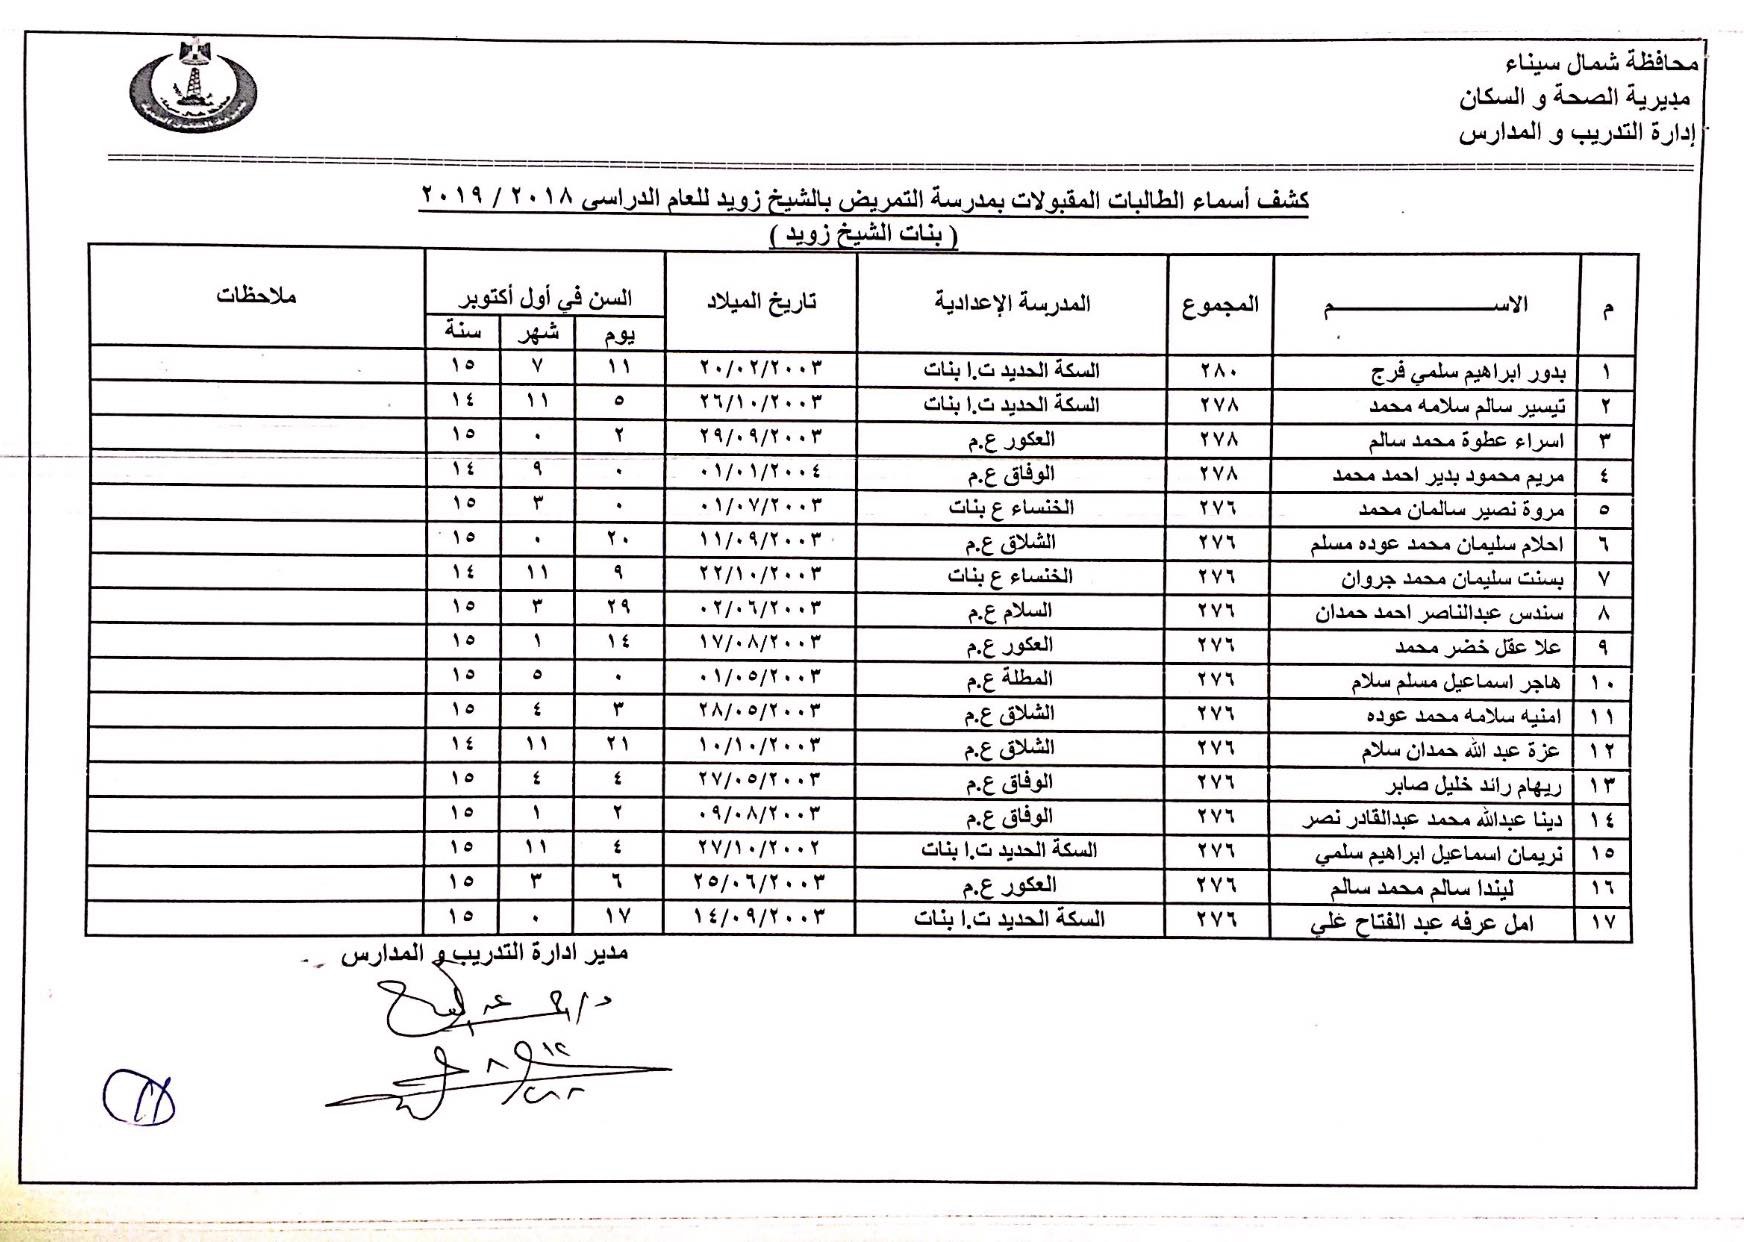 أسماء المقبولين بمدارس التمريض بشمال سيناء (11)